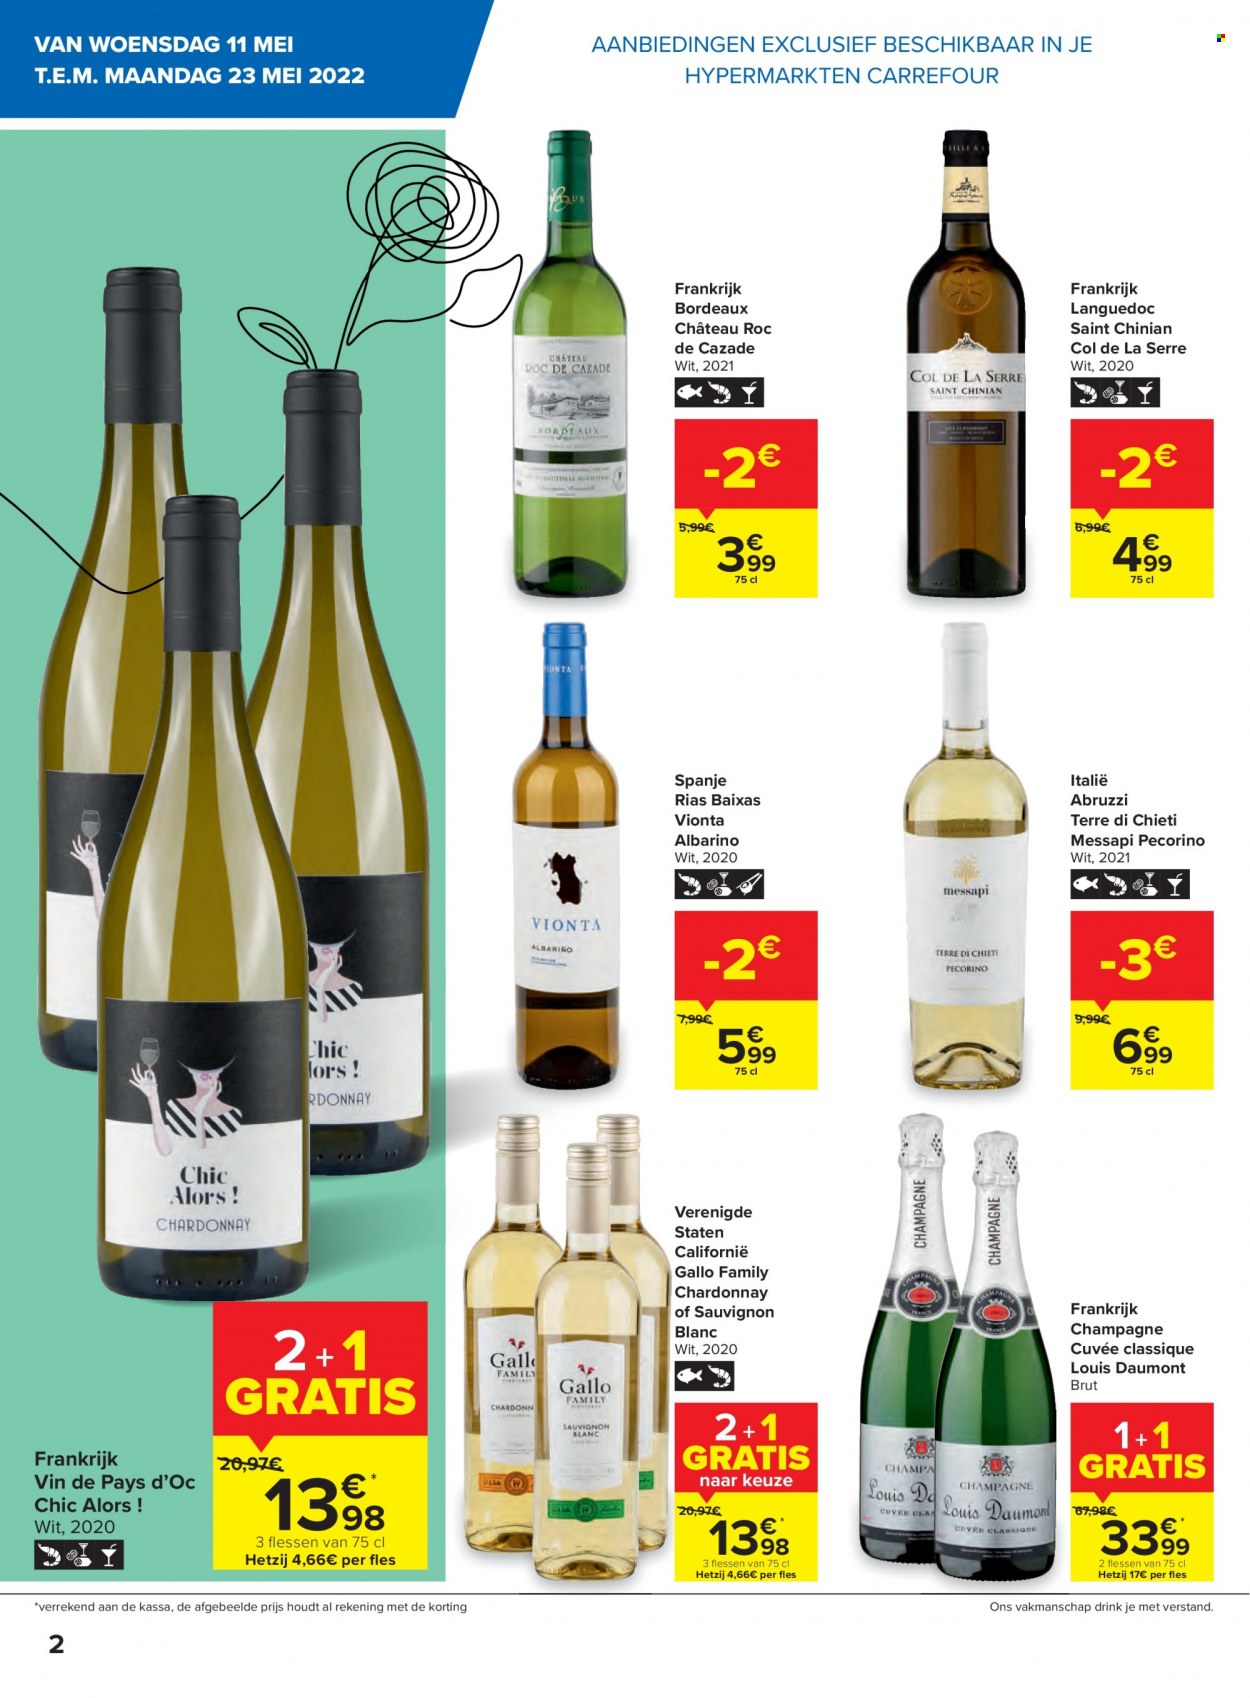 thumbnail - Catalogue Carrefour hypermarkt - 11/05/2022 - 23/05/2022 - Produits soldés - vin blanc, vin rouge, vin, Bordeaux, champagne, alcool, Cabernet Sauvignon, Sauvignon Blanc. Page 2.